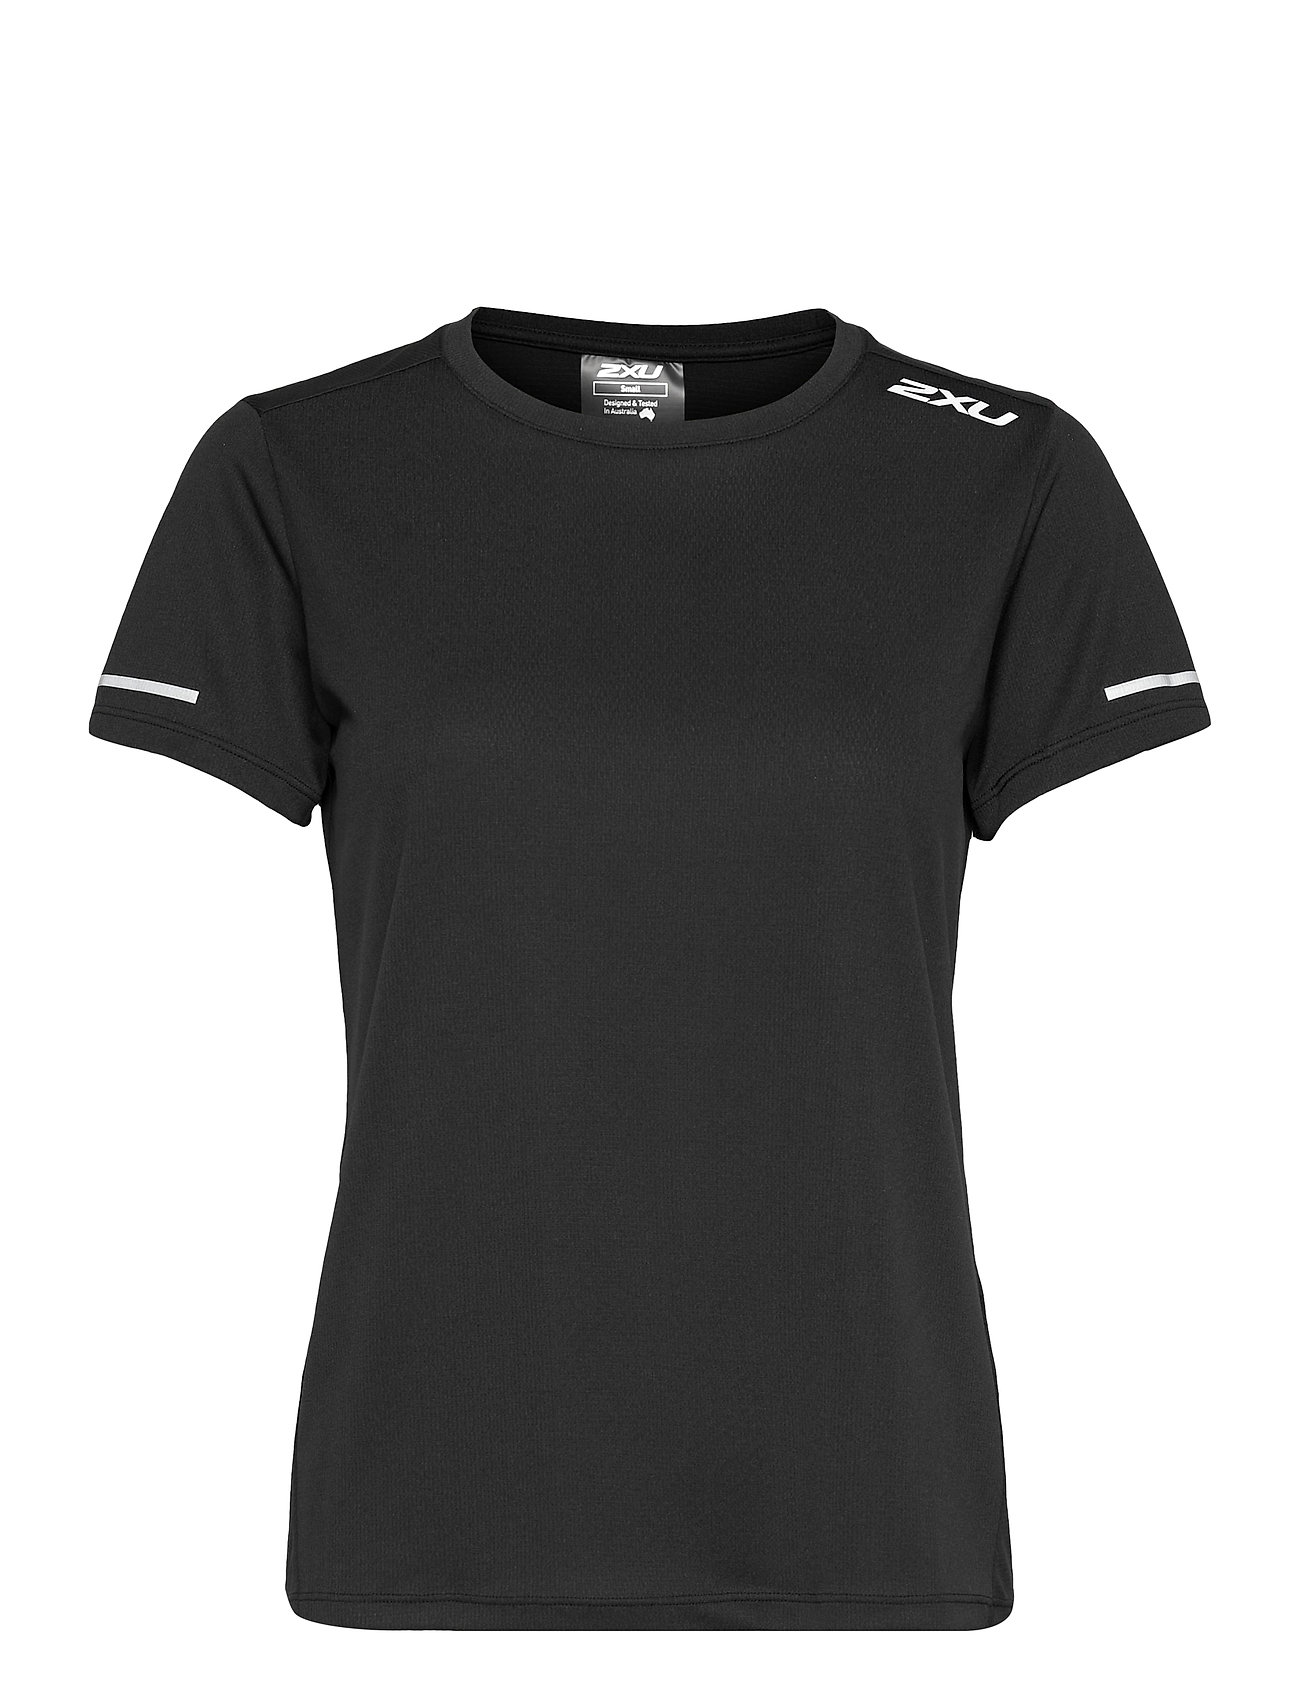 Aero Tee T-shirts & Tops Short-sleeved Svart 2XU